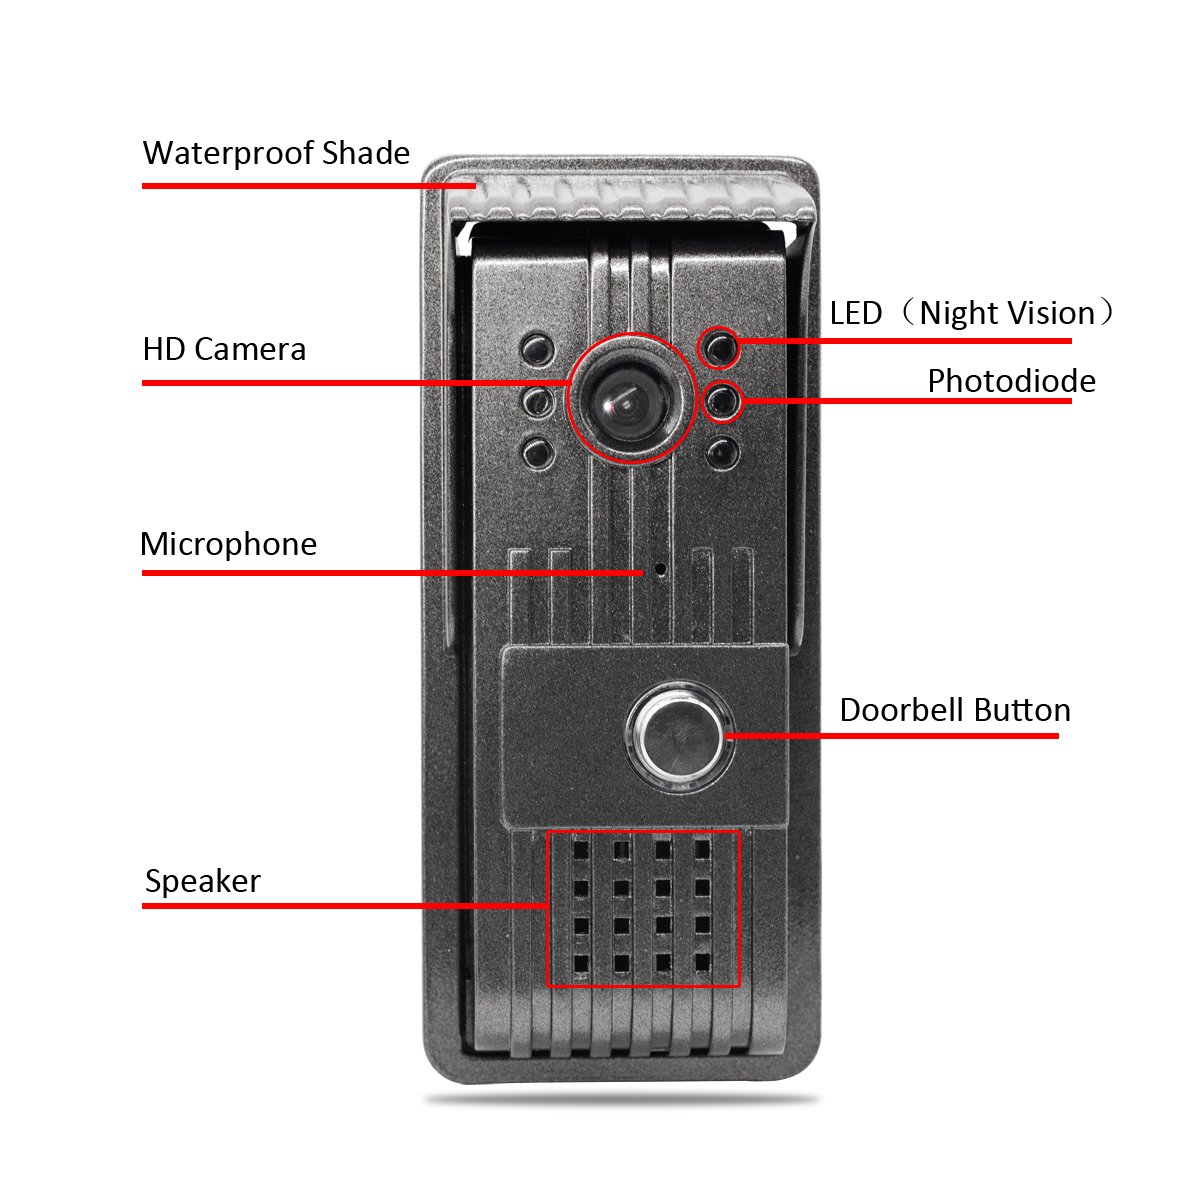 AlyBell waterproof IP55 WiFi video door bell with 1 megapixel camera 5